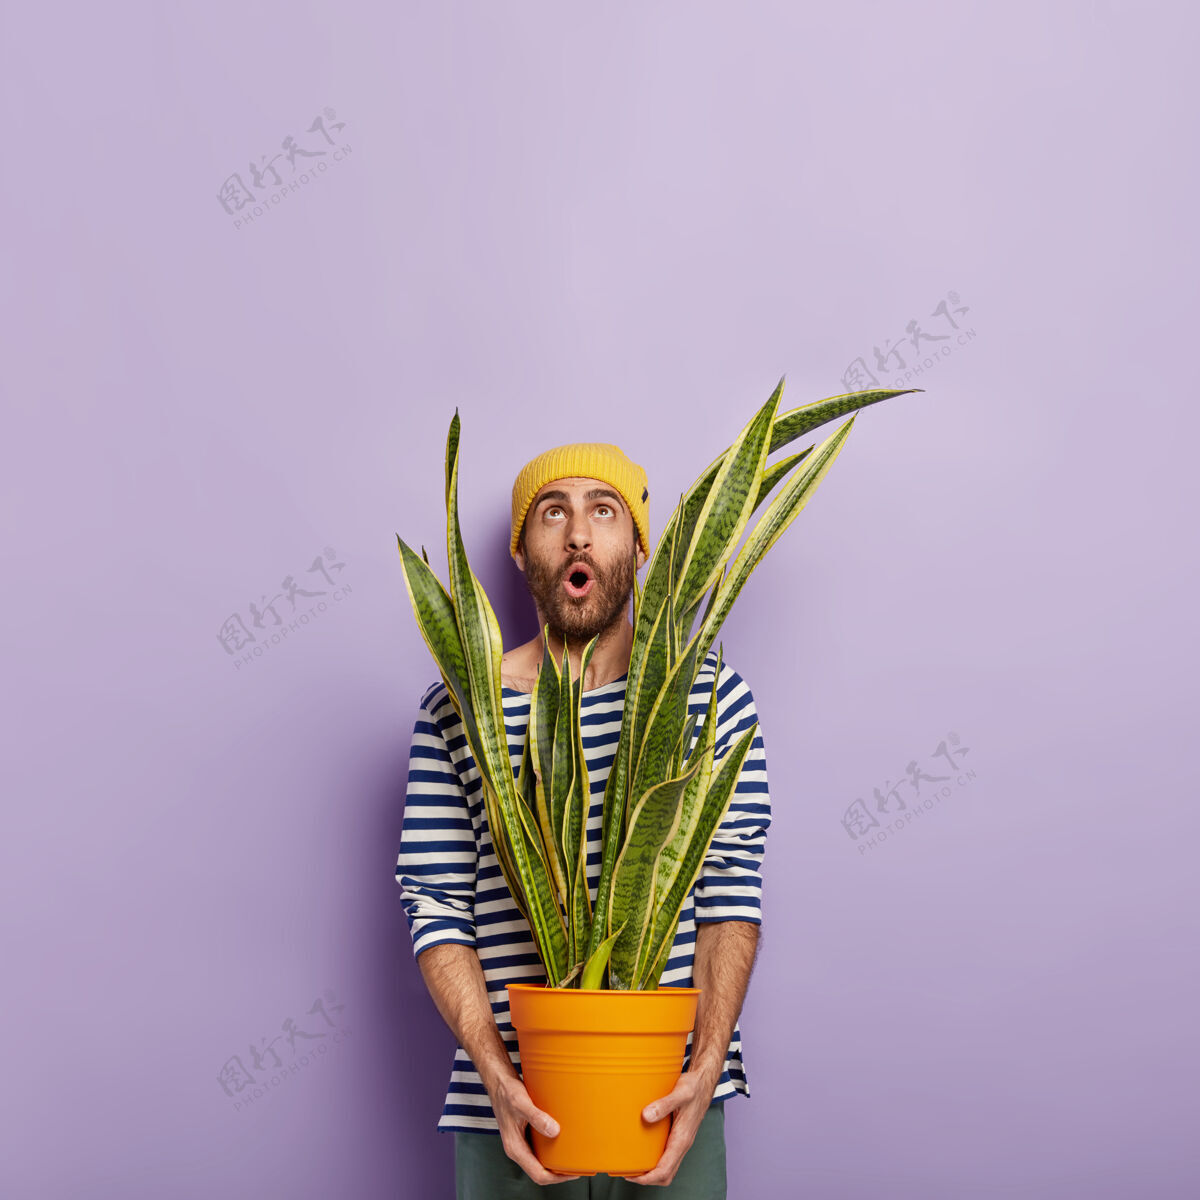 园艺惊讶的没刮胡子的花商戴着黄色帽子 穿着条纹水手套头衫 用意料之外的目光向上聚焦 手里拿着一盆绿色的三叶草工人花盆不知道